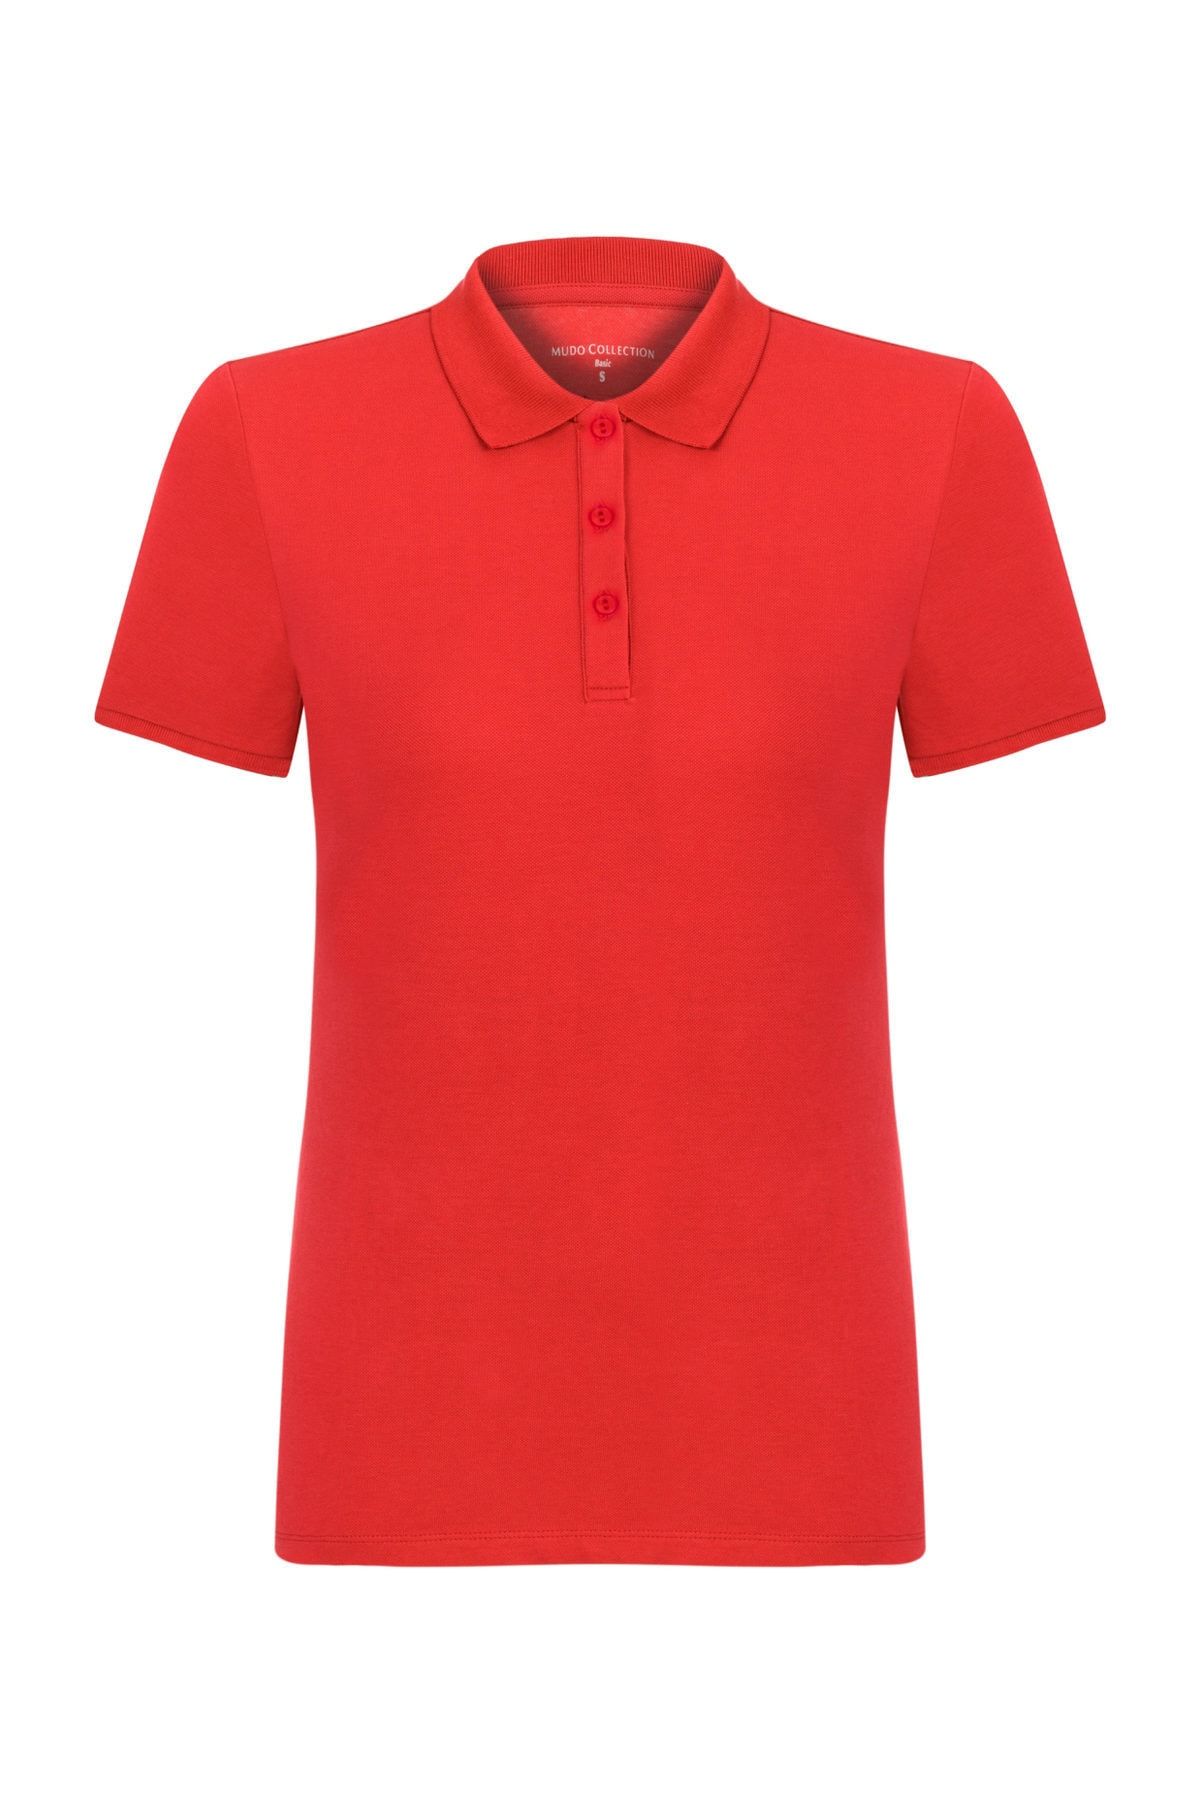 Mudo Kadın Kırmızı Polo Yaka Pamuklu T-Shirt 368781